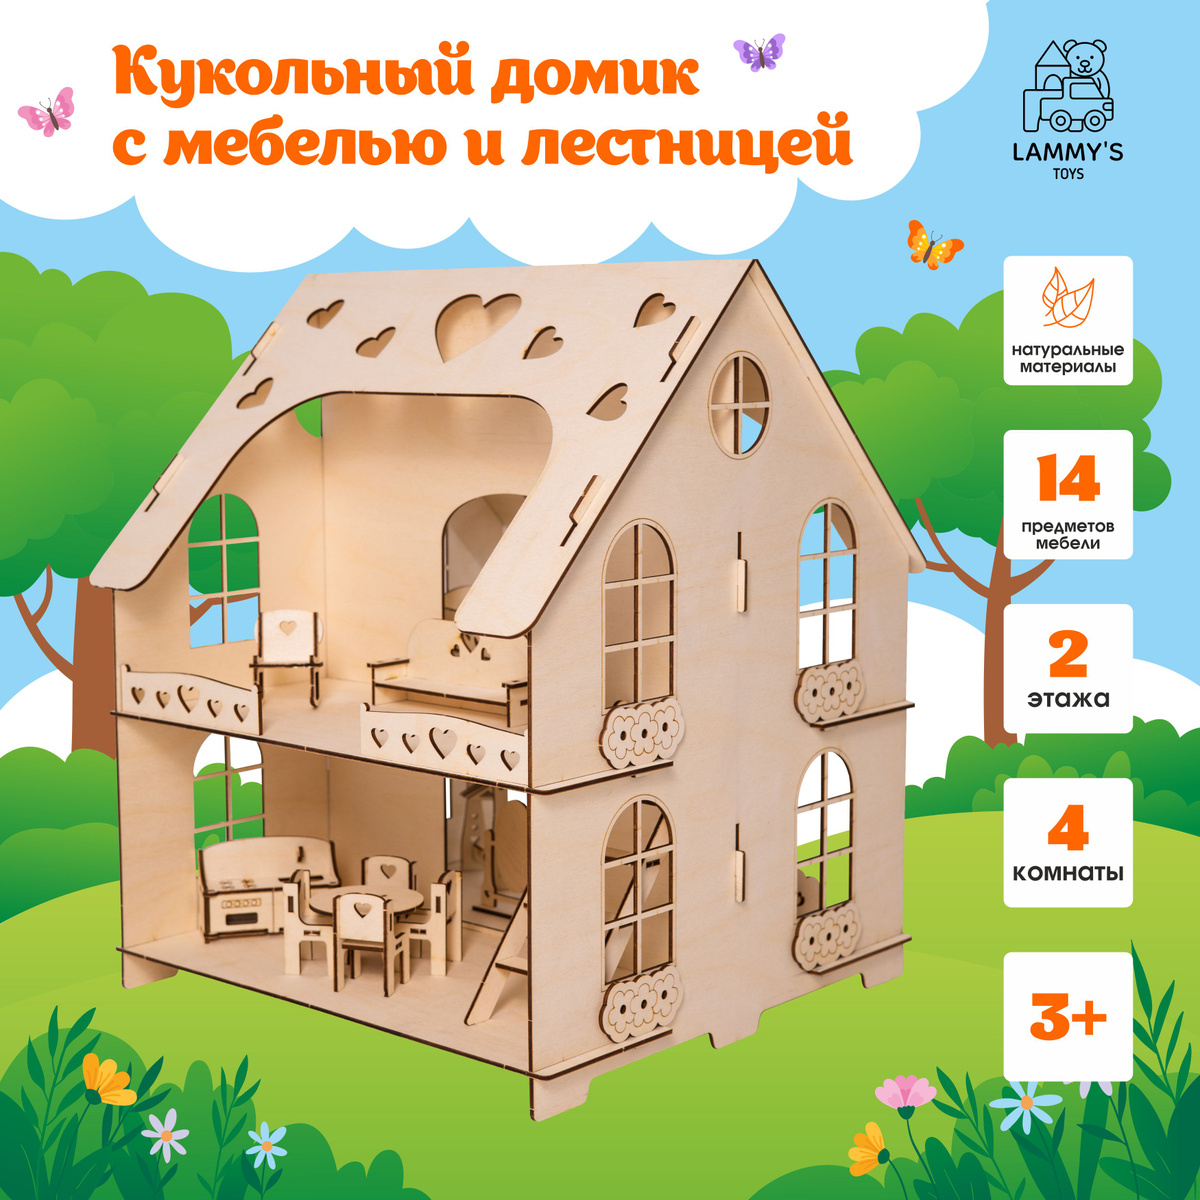 Кукольный домик изящный предмет - игрушка, созданная специально для маленьких детей. Дом с мебелью - это интересное сооружение, которое понравится любой девочке в возрасте три - пять лет и ее кукле до 15 см. 